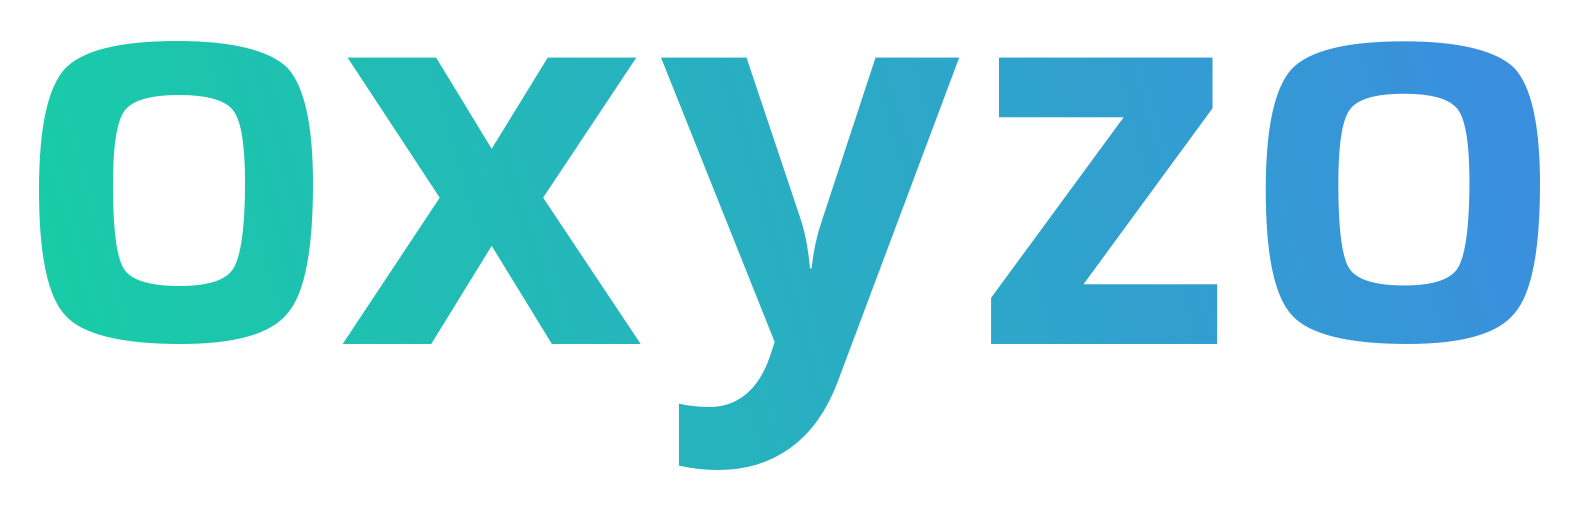 oxyzo_logo